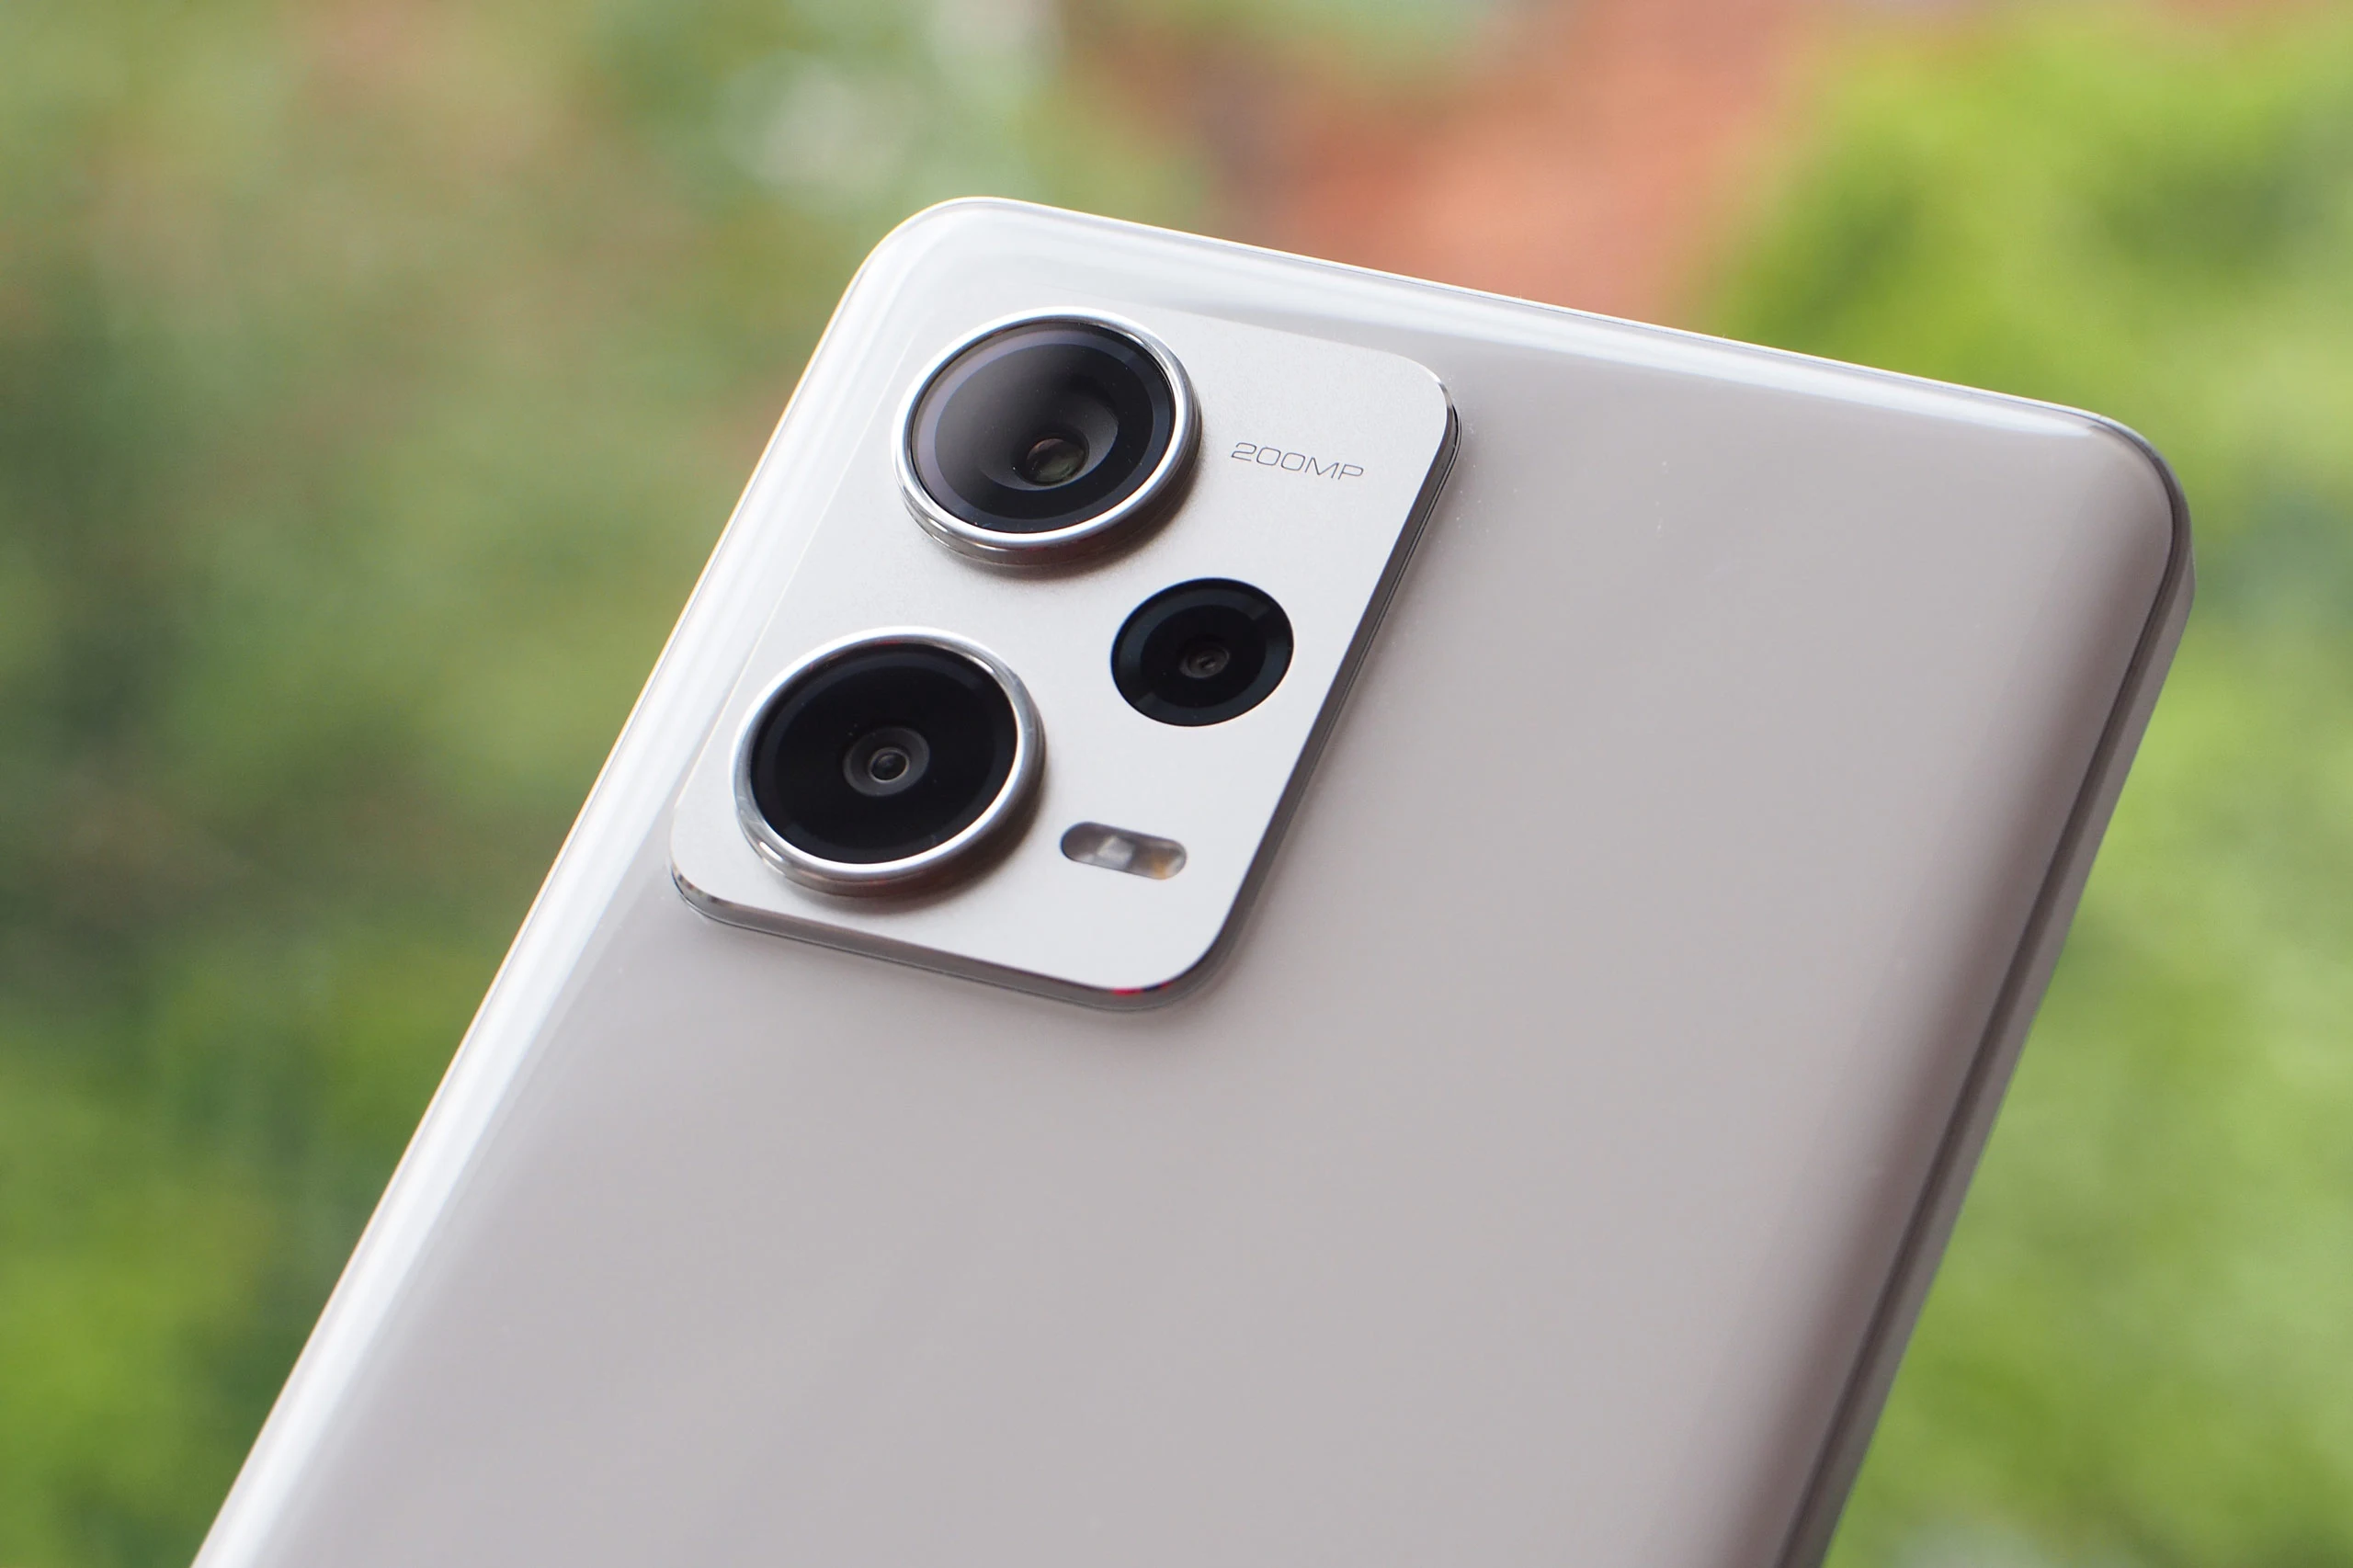 Xiaomi 11T Pro precio características cámaras batería un móvil que destaca  reseña, TECNOLOGIA